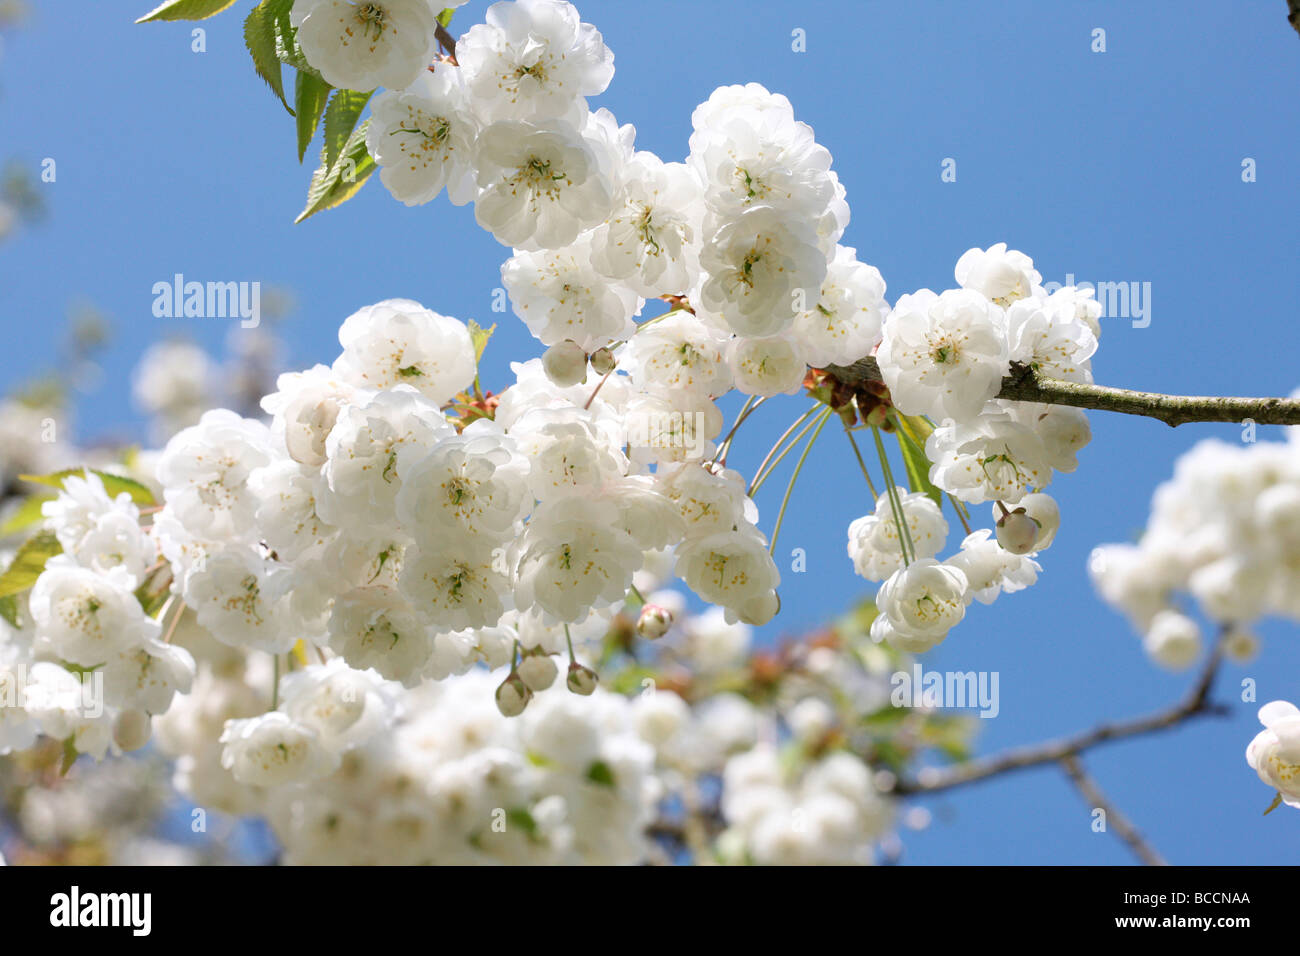 Gean double fleur avec ses grappes tombantes blanc caractéristique une belle cherry tree Banque D'Images